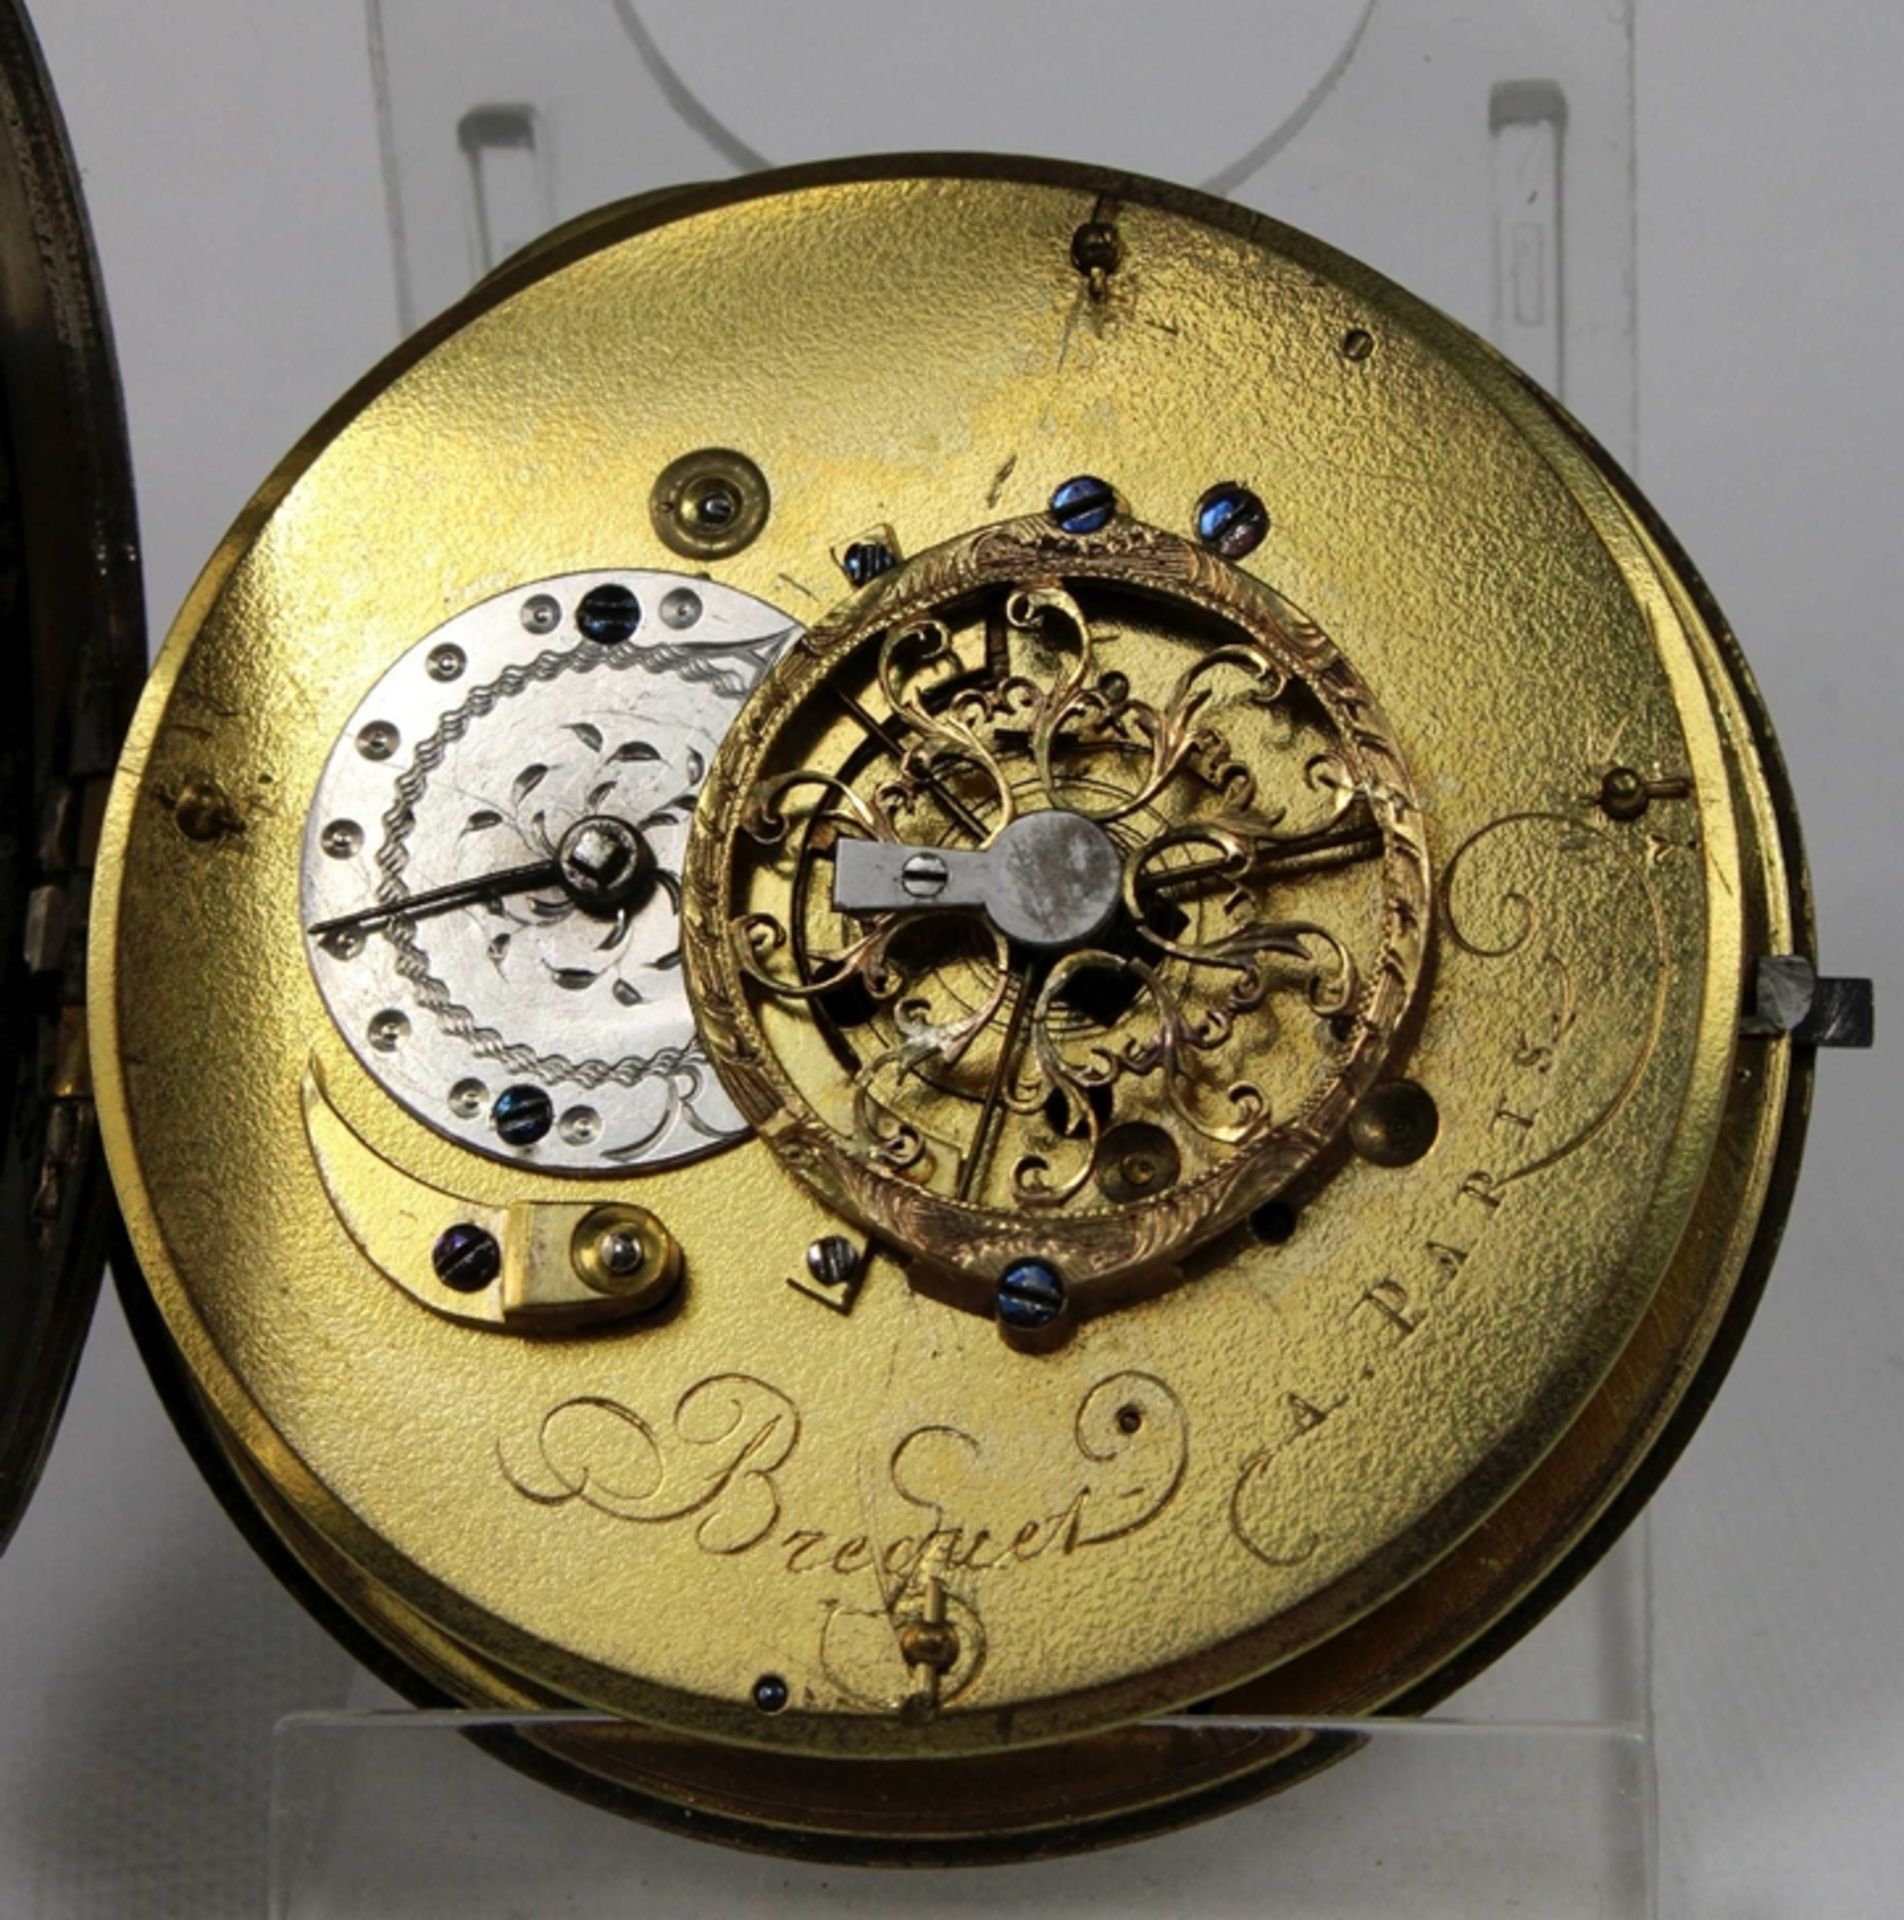 Breguet Schlüsseluhr, um 1800, Frankreich, Silber, Uhrwerk bez. Breguet a Paris, Gehäuse-Nr.: 5946, - Bild 4 aus 5